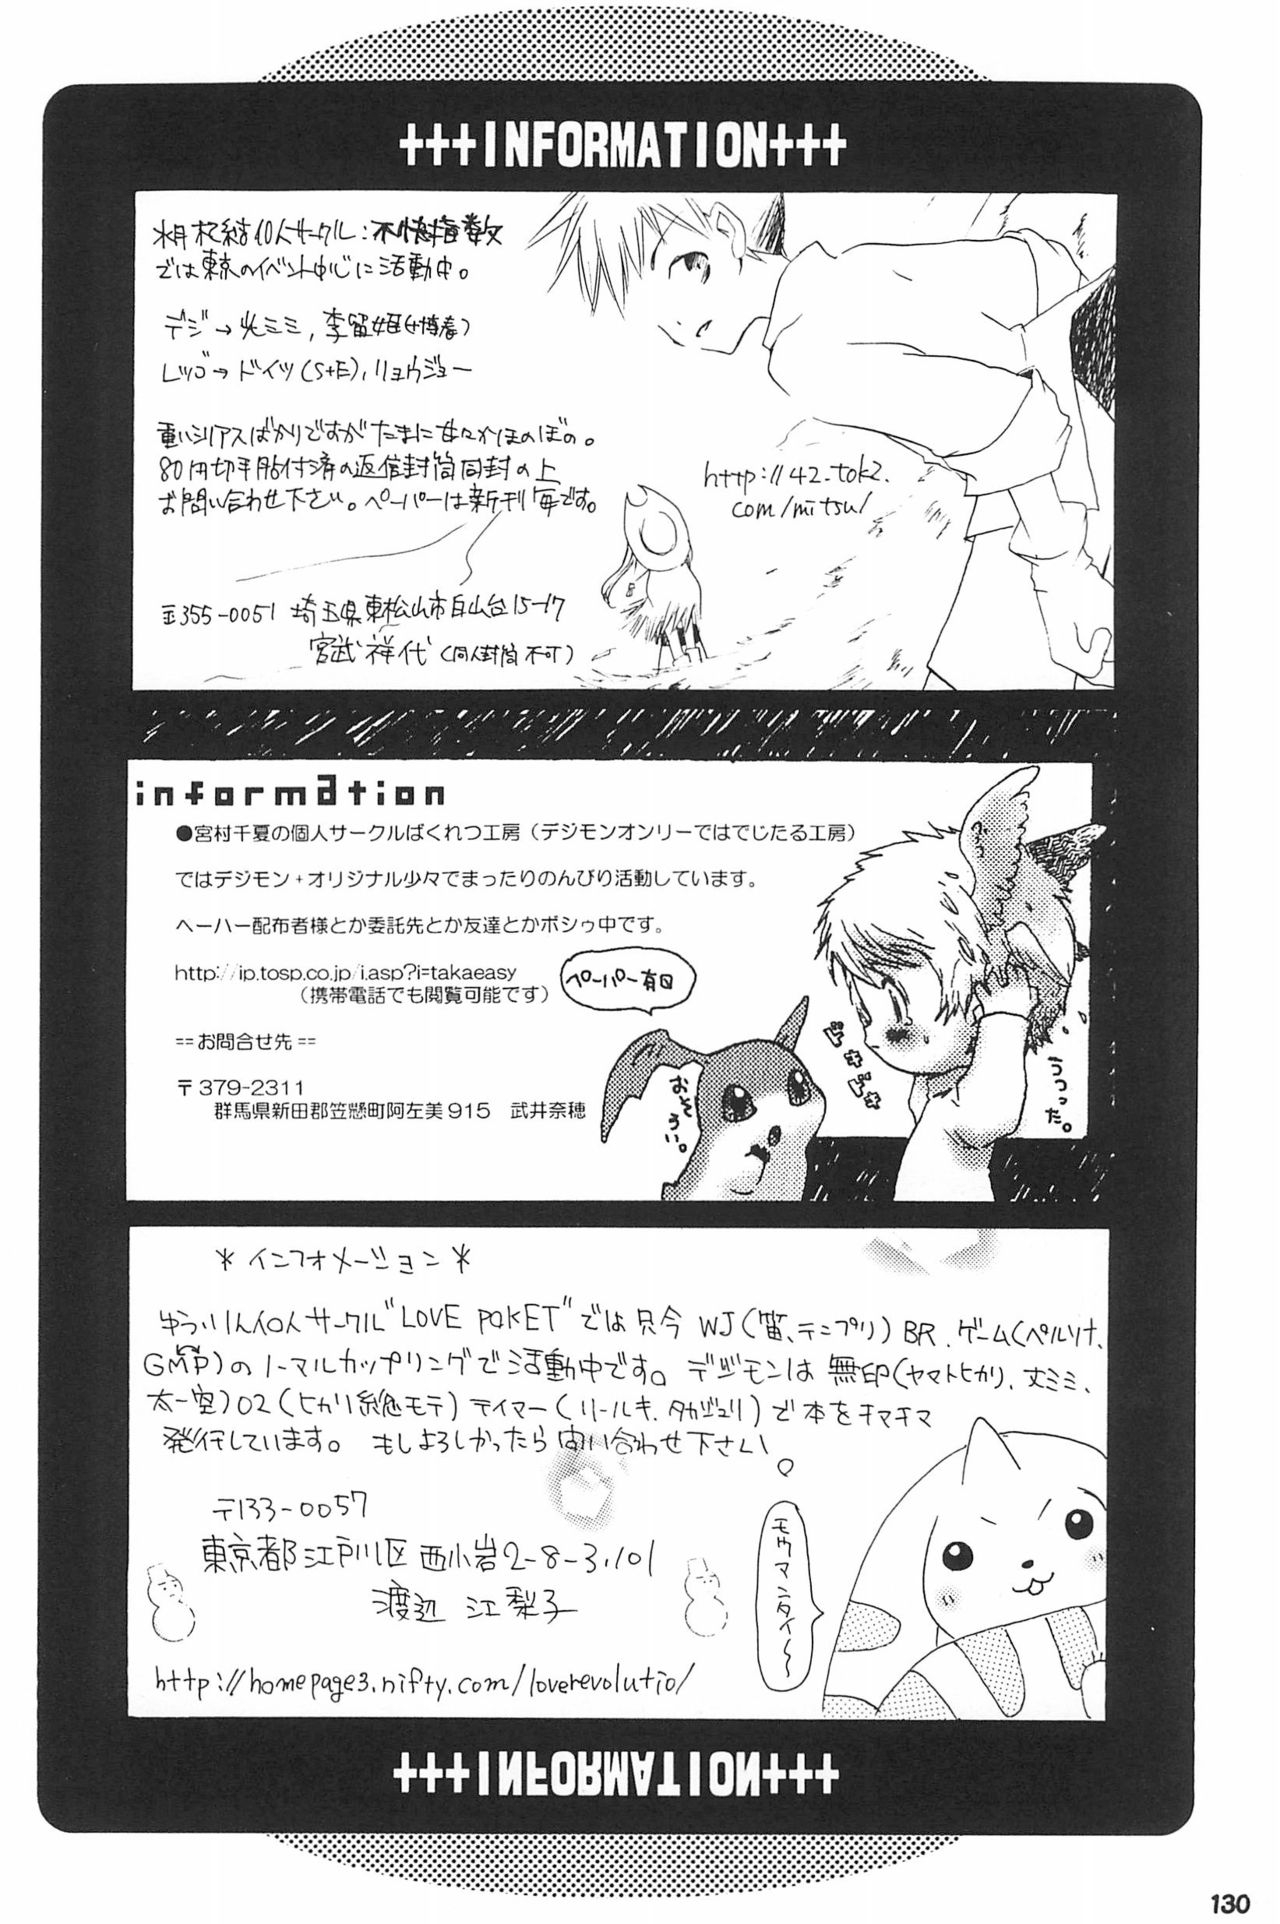 (SC15) [LeeRuki Anthology Jikkou Iinkai (Various)] LeeRuki Anthology J&R REPORT (Digimon Tamers) 131